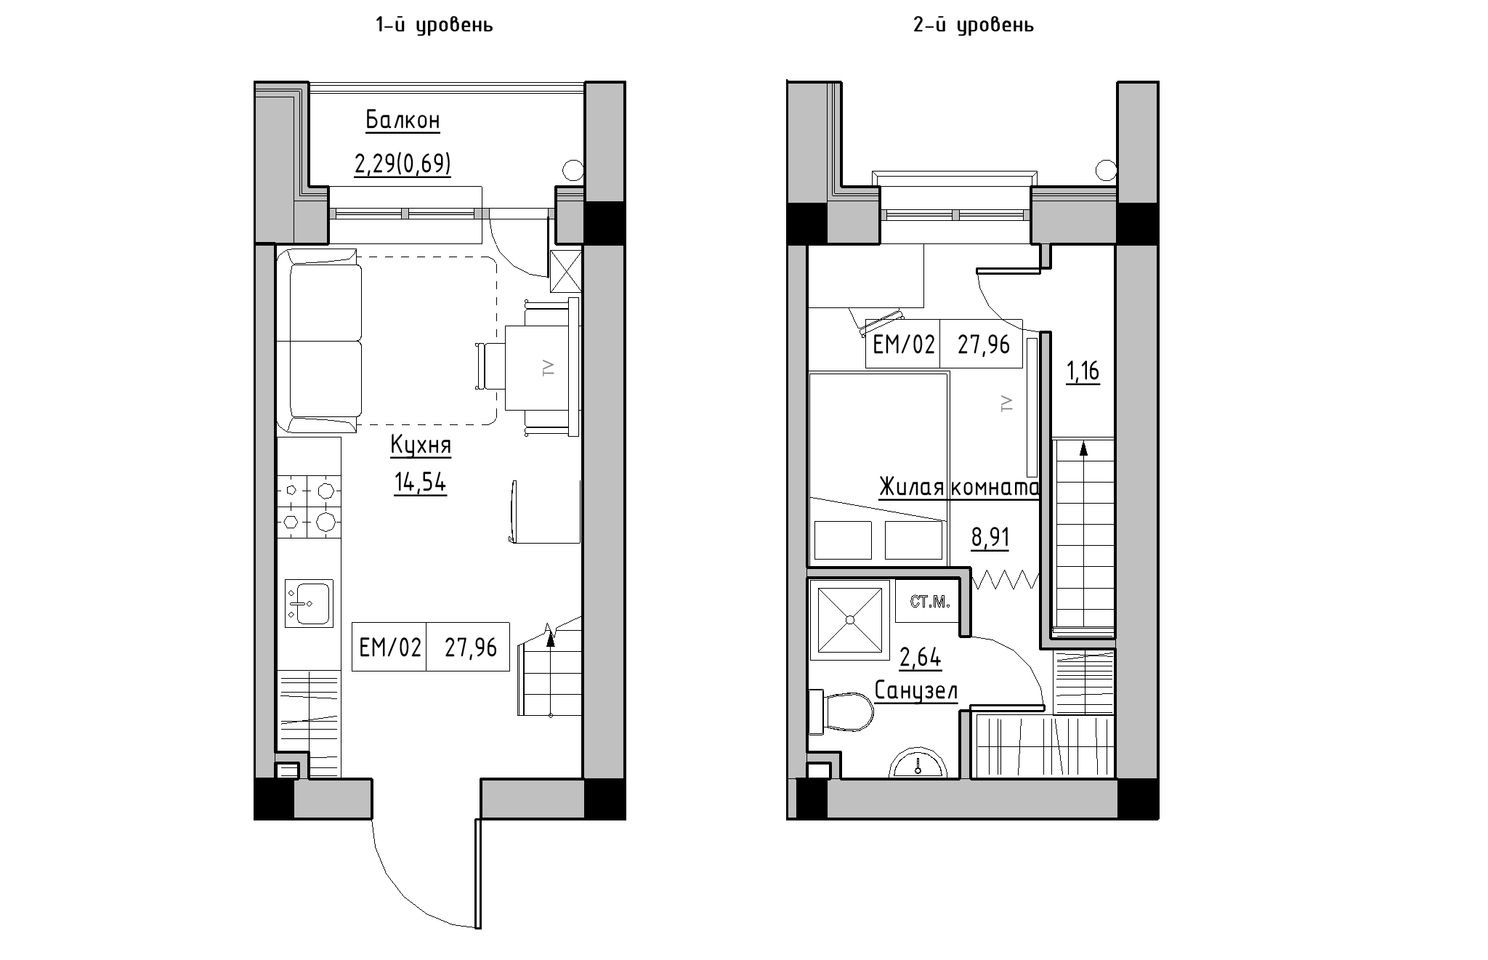 Planning 2-lvl flats area 27.96m2, KS-010-05/0010.